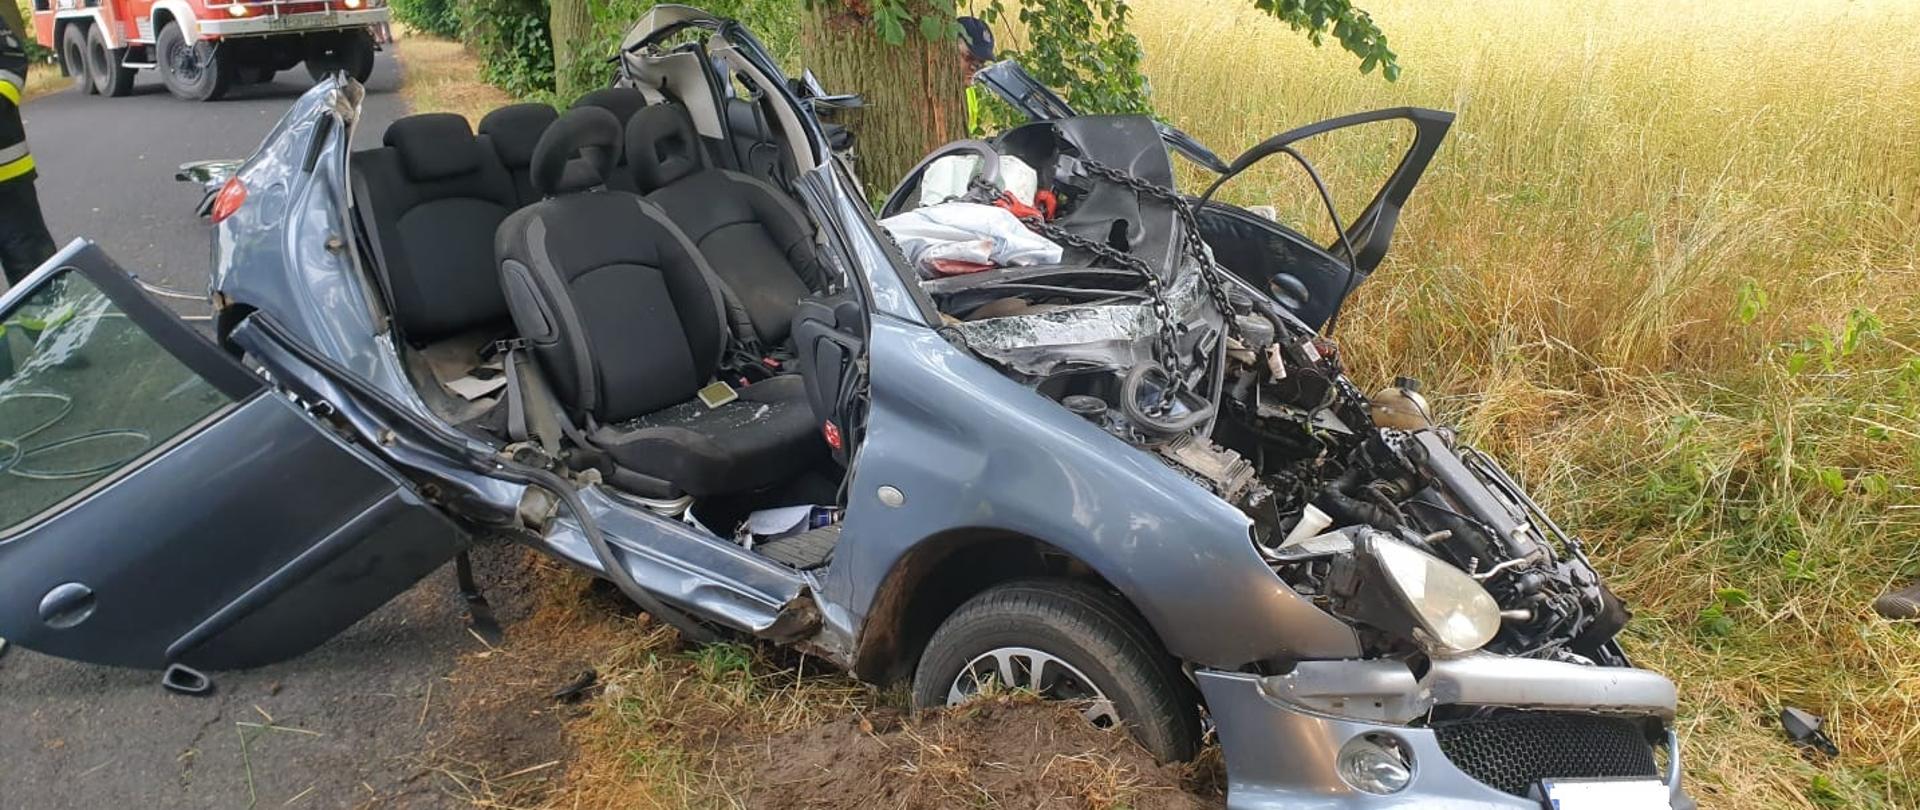 Zdjęcie na pierwszym planie przedstawia rozbity samochód marki peugeot 206 z odciętym dachem, w tle pojazd strażacki.